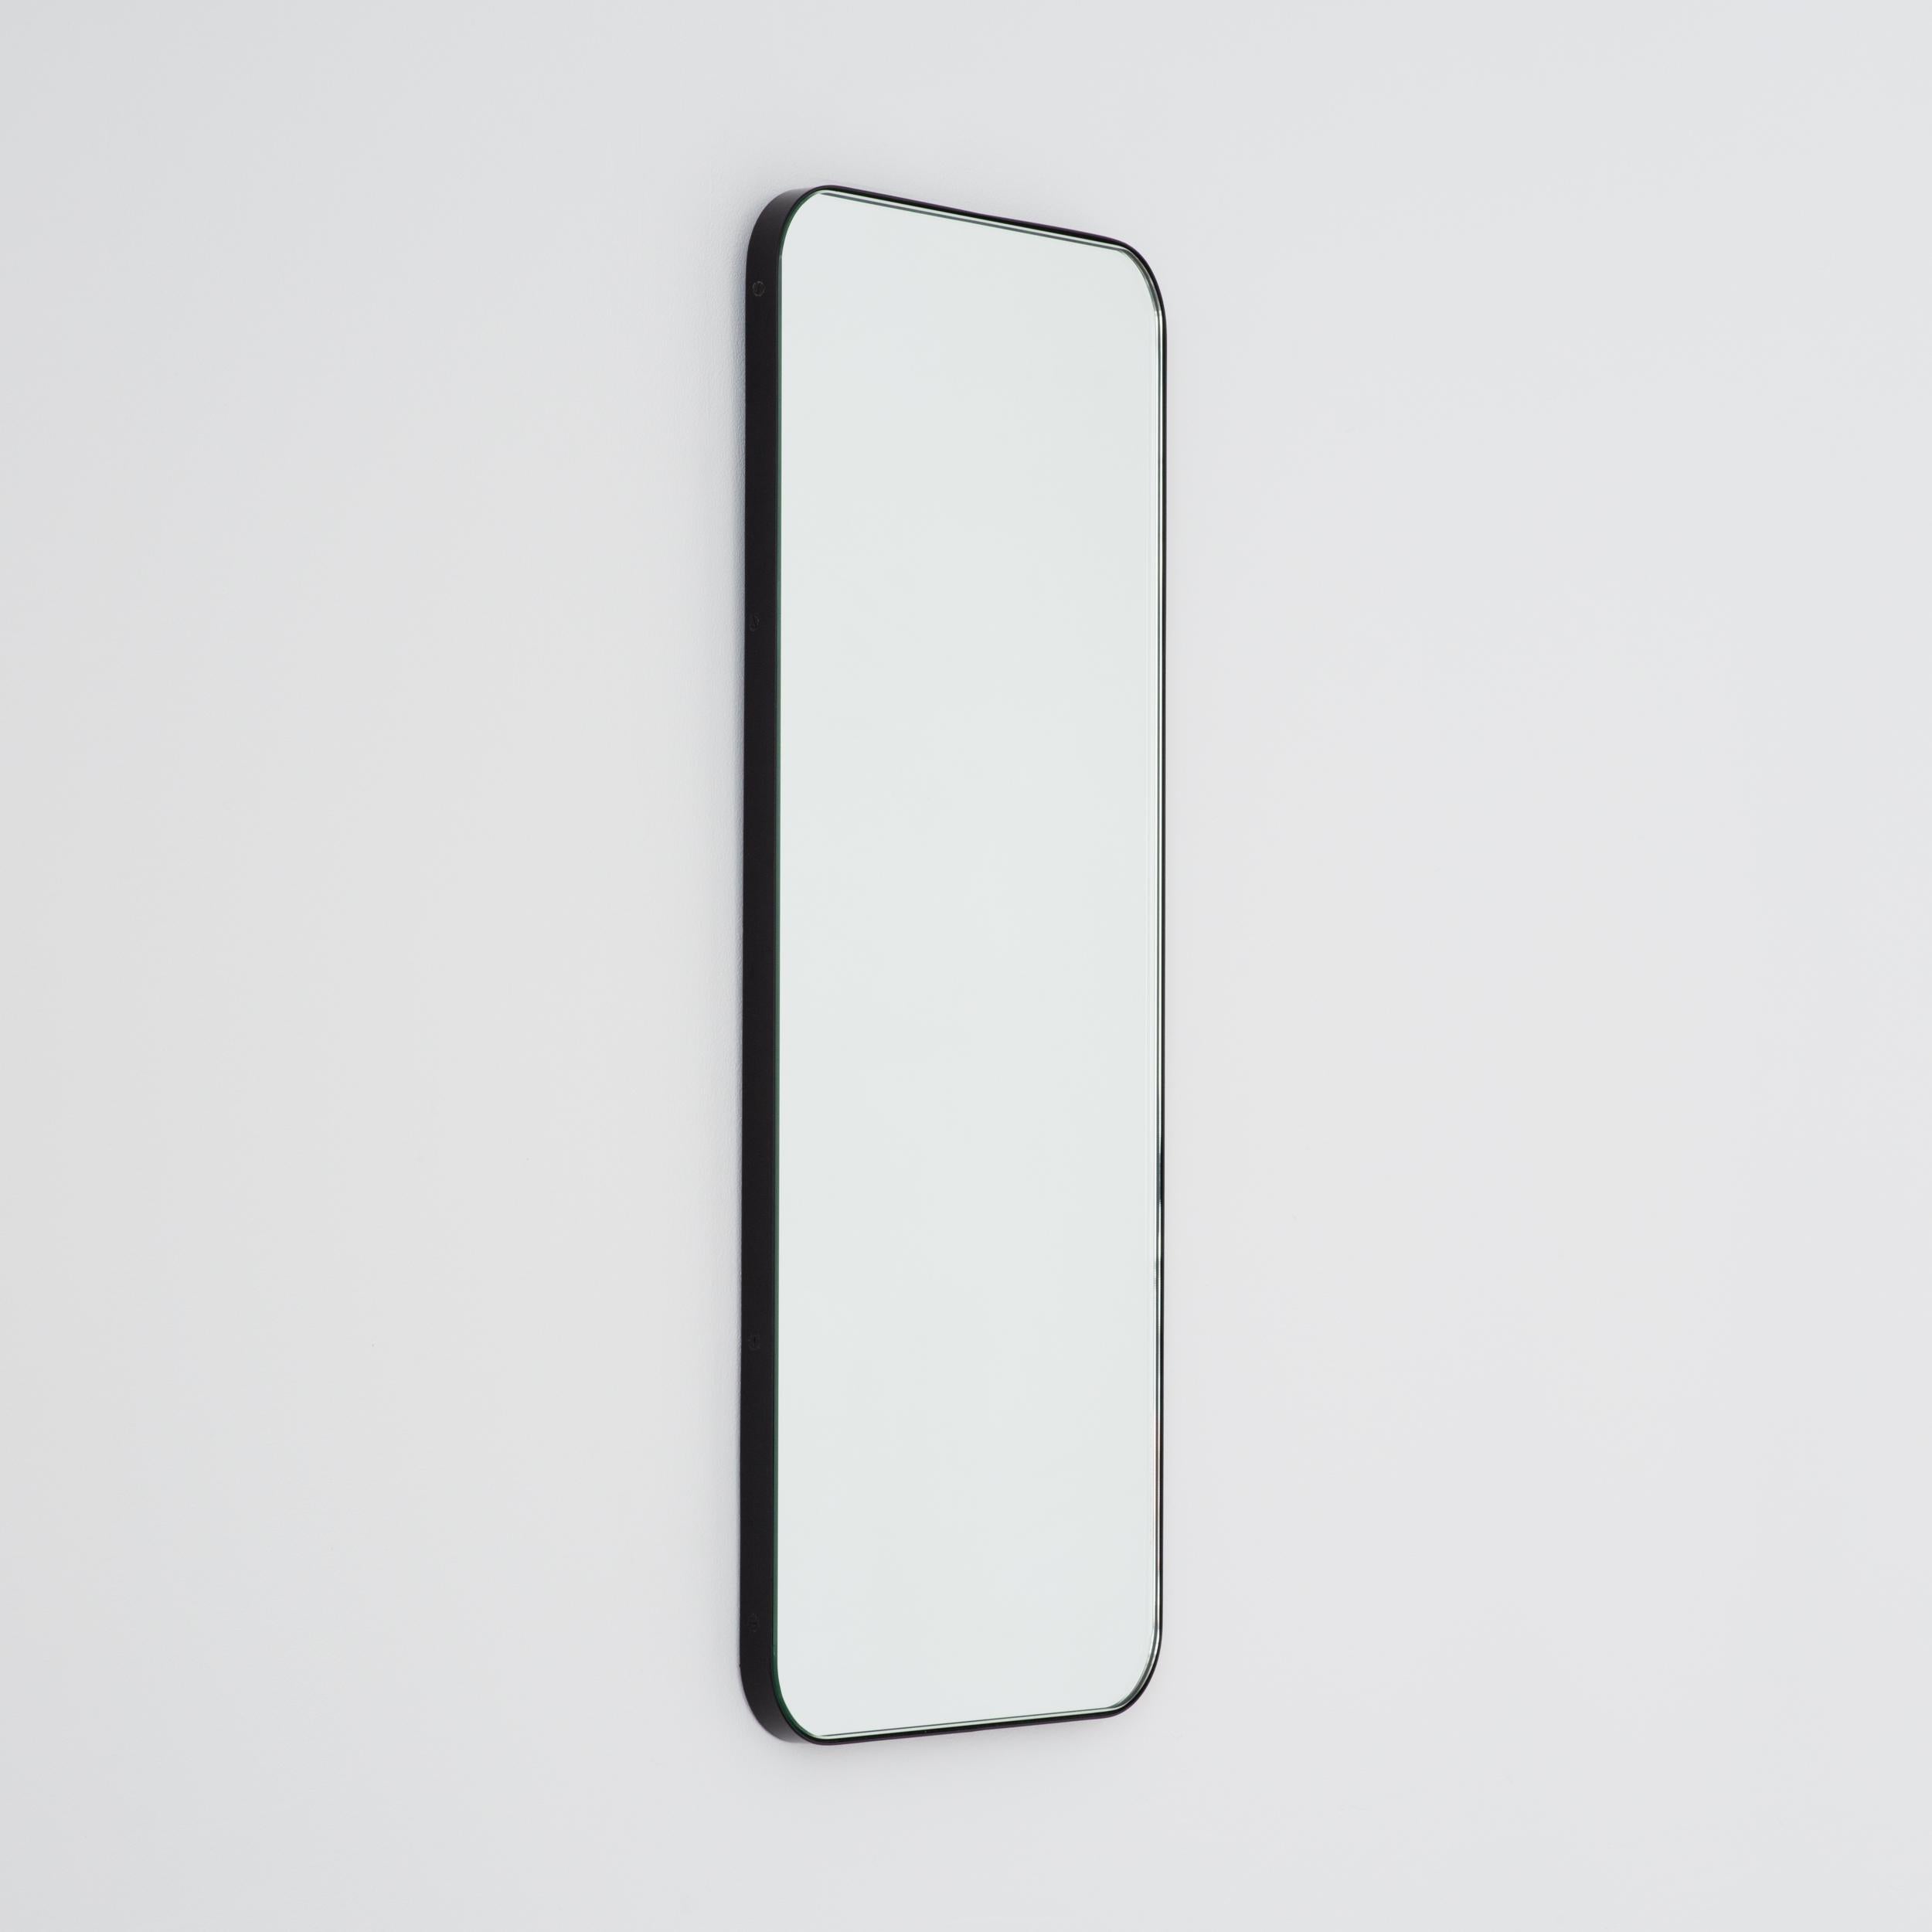 Miroir rectangulaire moderne avec un noir élégant. Une partie de la charmante collection Quadris, conçue et fabriquée à la main à Londres, au Royaume-Uni. 

Les miroirs de taille moyenne, grande et extra-large (37cm x 56cm, 46cm x 71cm et 48cm x